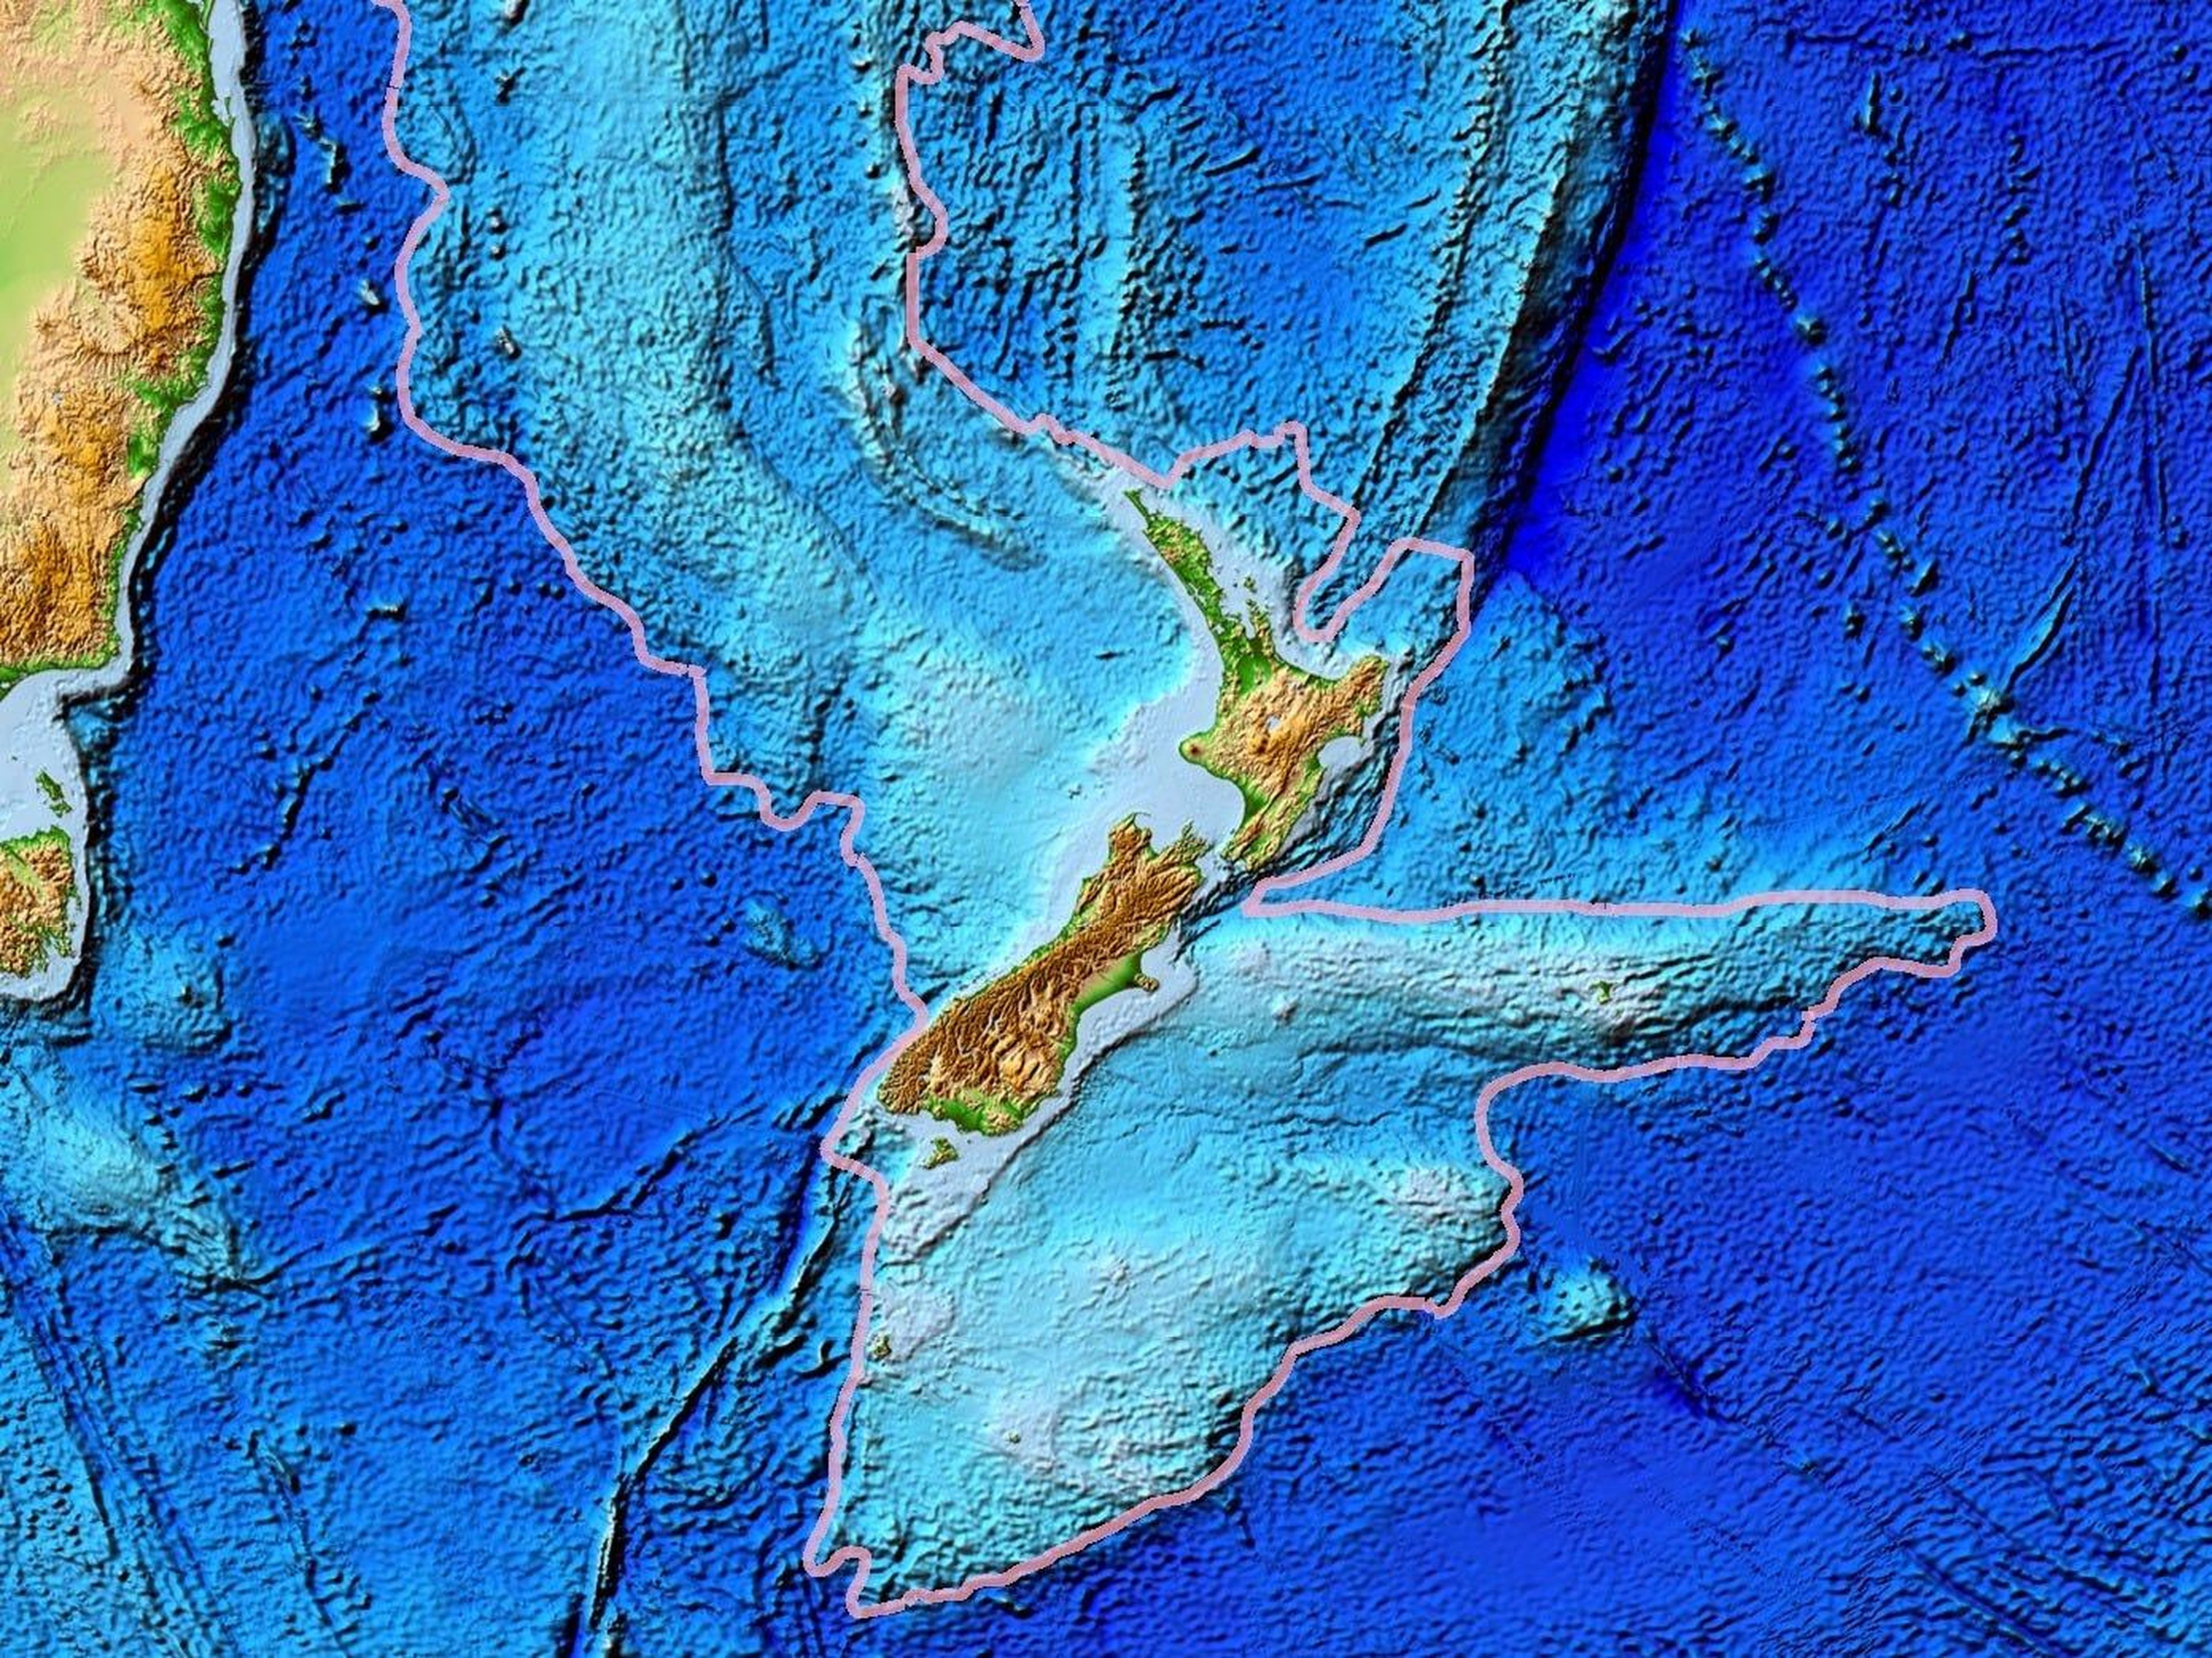 Nuevos mapas revelan detalles sobre el tamaño y la forma del octavo continente perdido de la Tierra, Zealandia, que desapareció bajo el Océano Pacífico